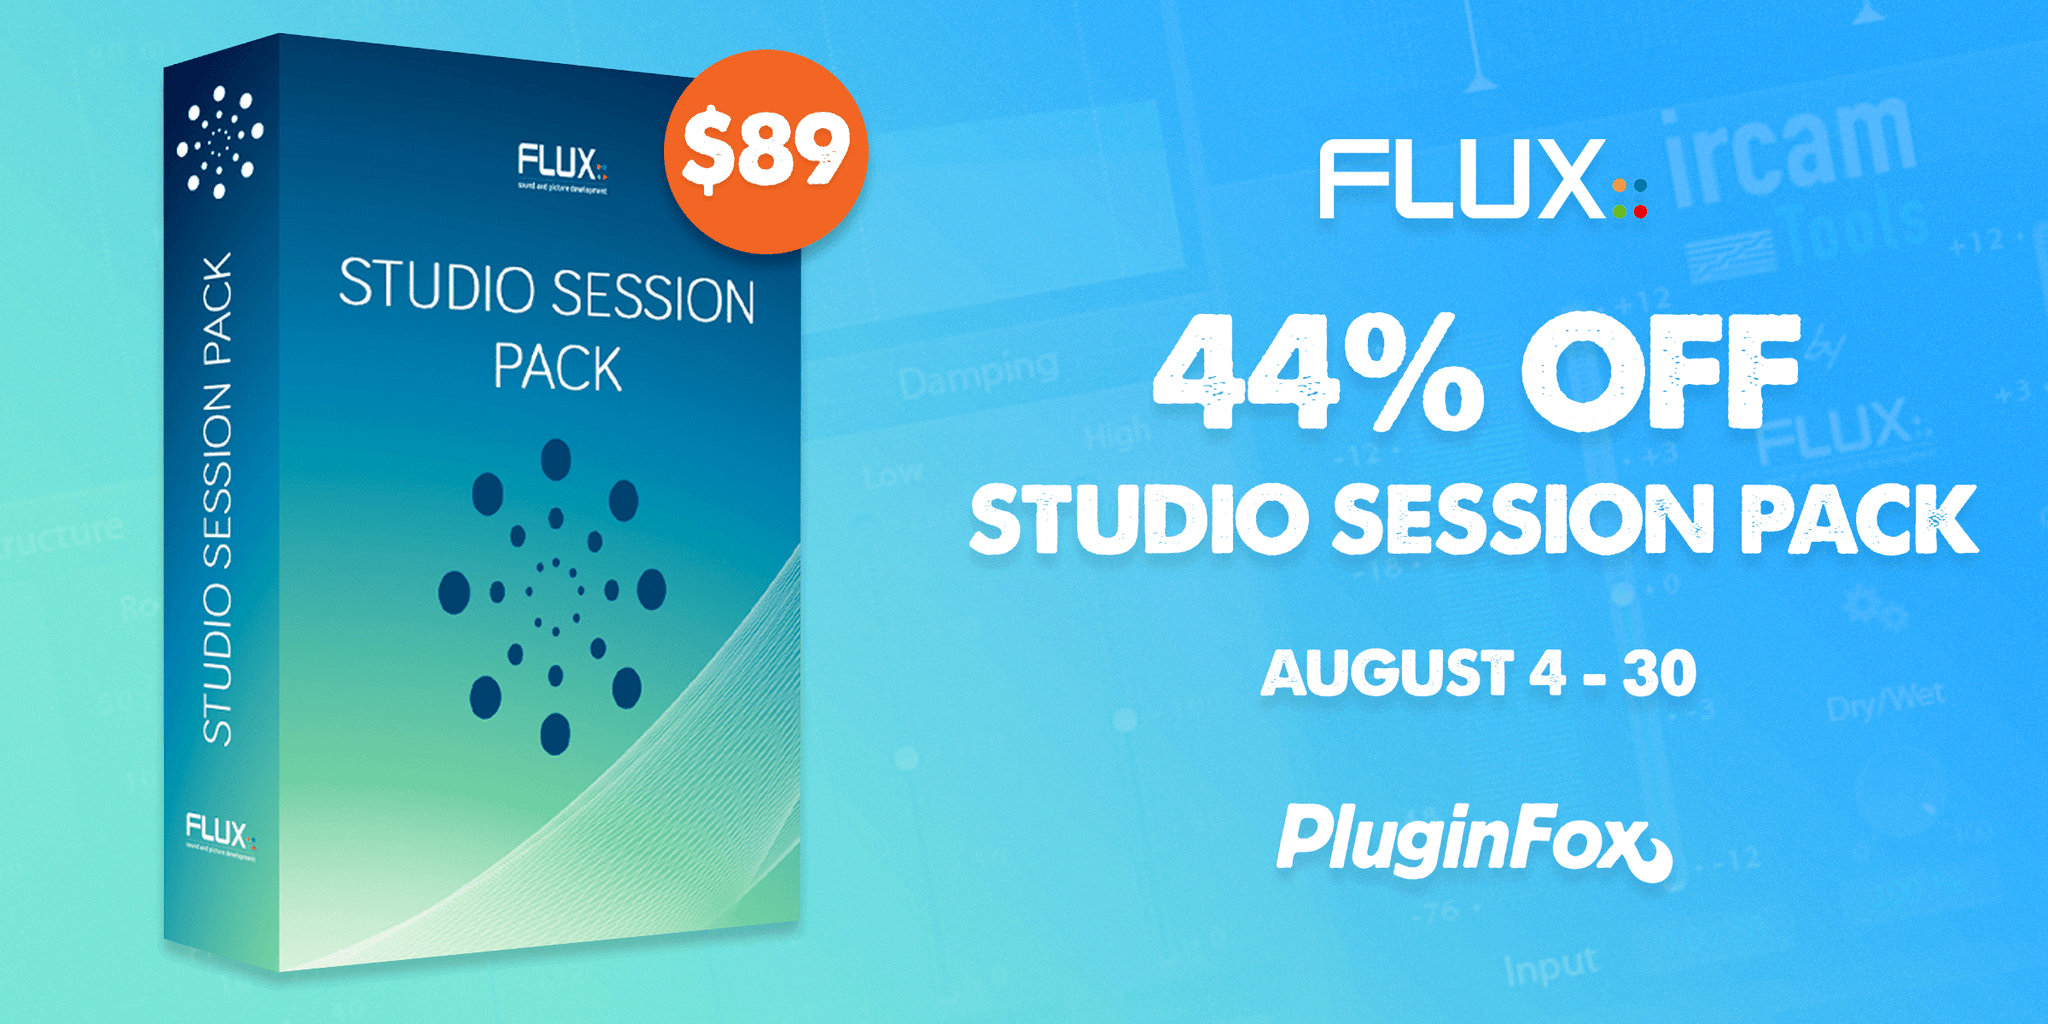 Flux Studio Session Pack Sale - Aug 4-30